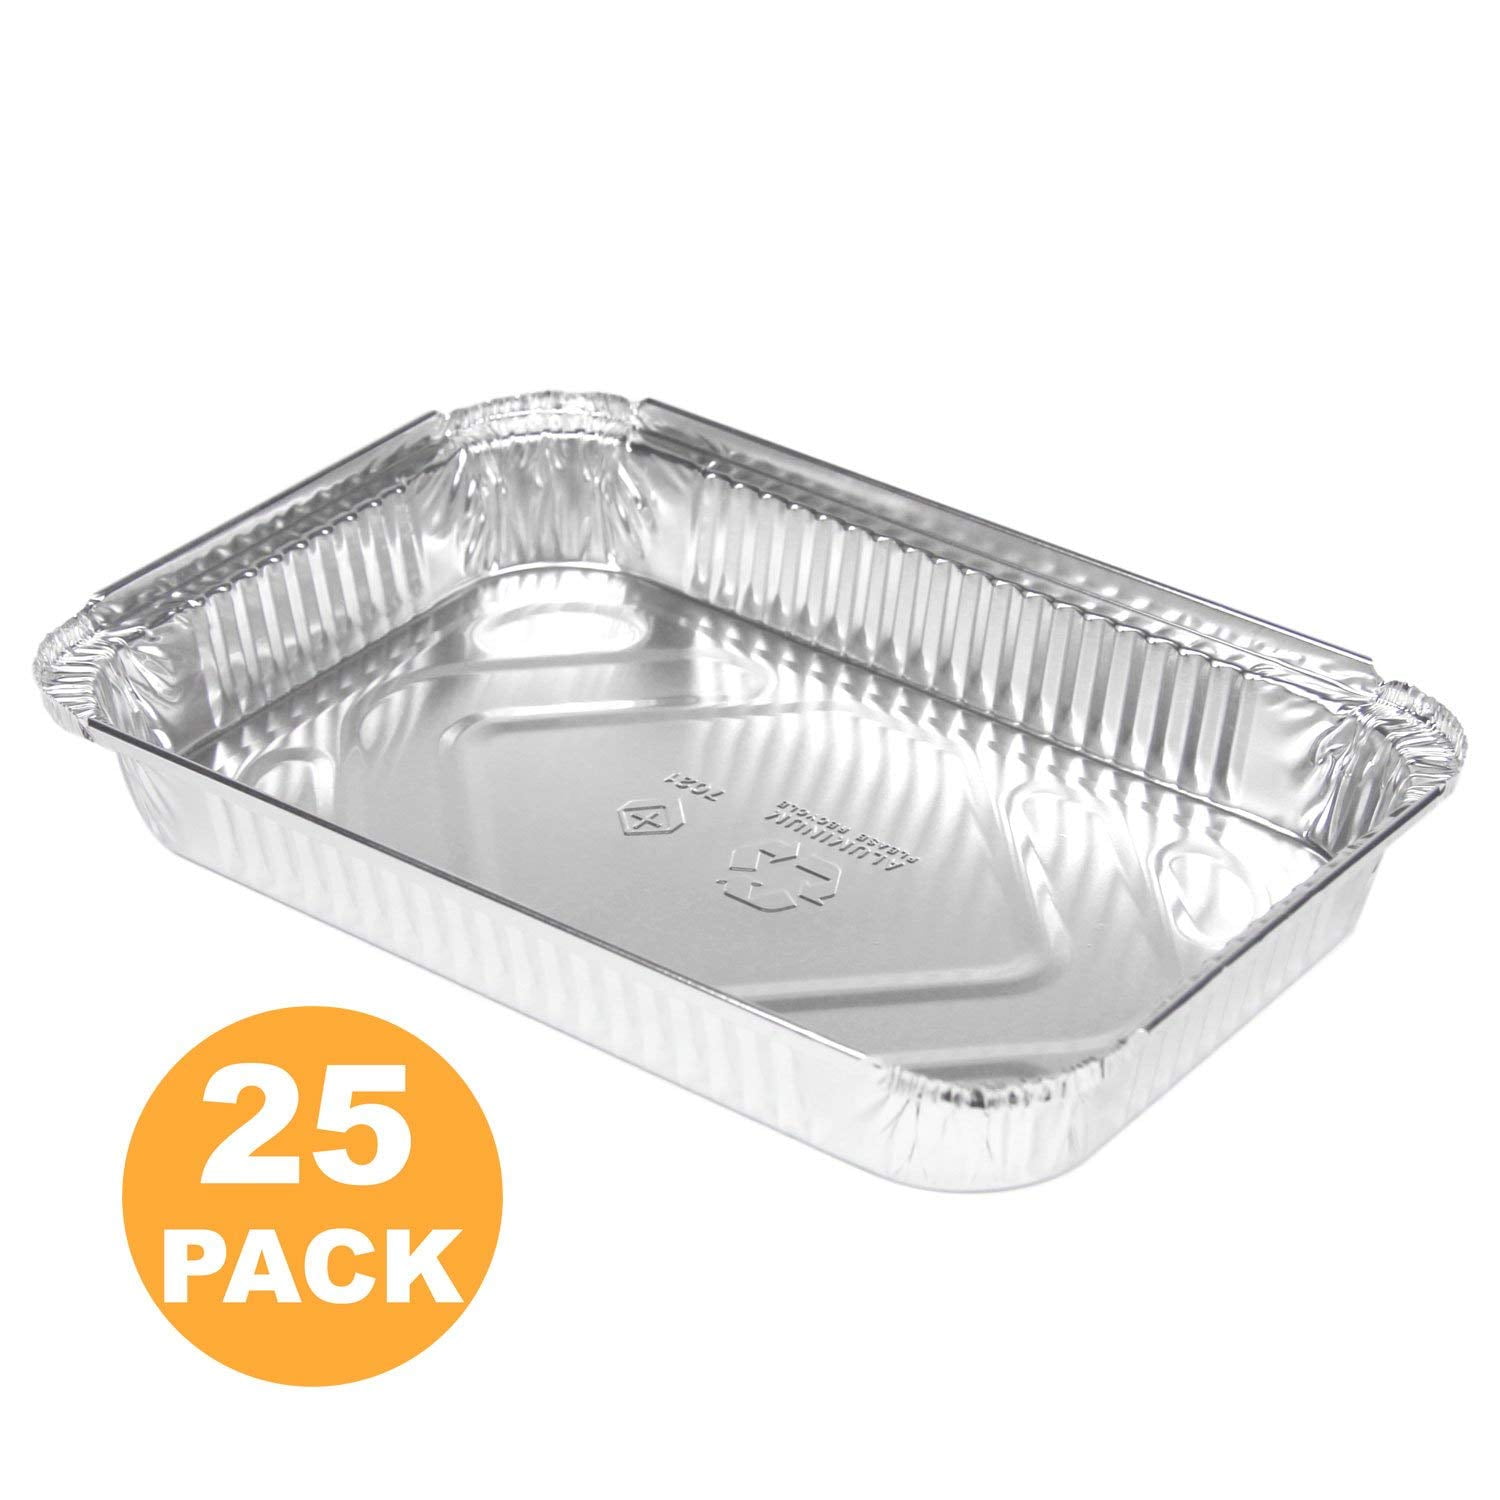  (25 Pack) 1/4 Size Cookie Sheet Baking Cake Pans l 12.8” x 8.9” Disposable  Aluminum Foil Trays l Premium Heavy Duty Nonstick Baking Sheets Reusable:  Home & Kitchen